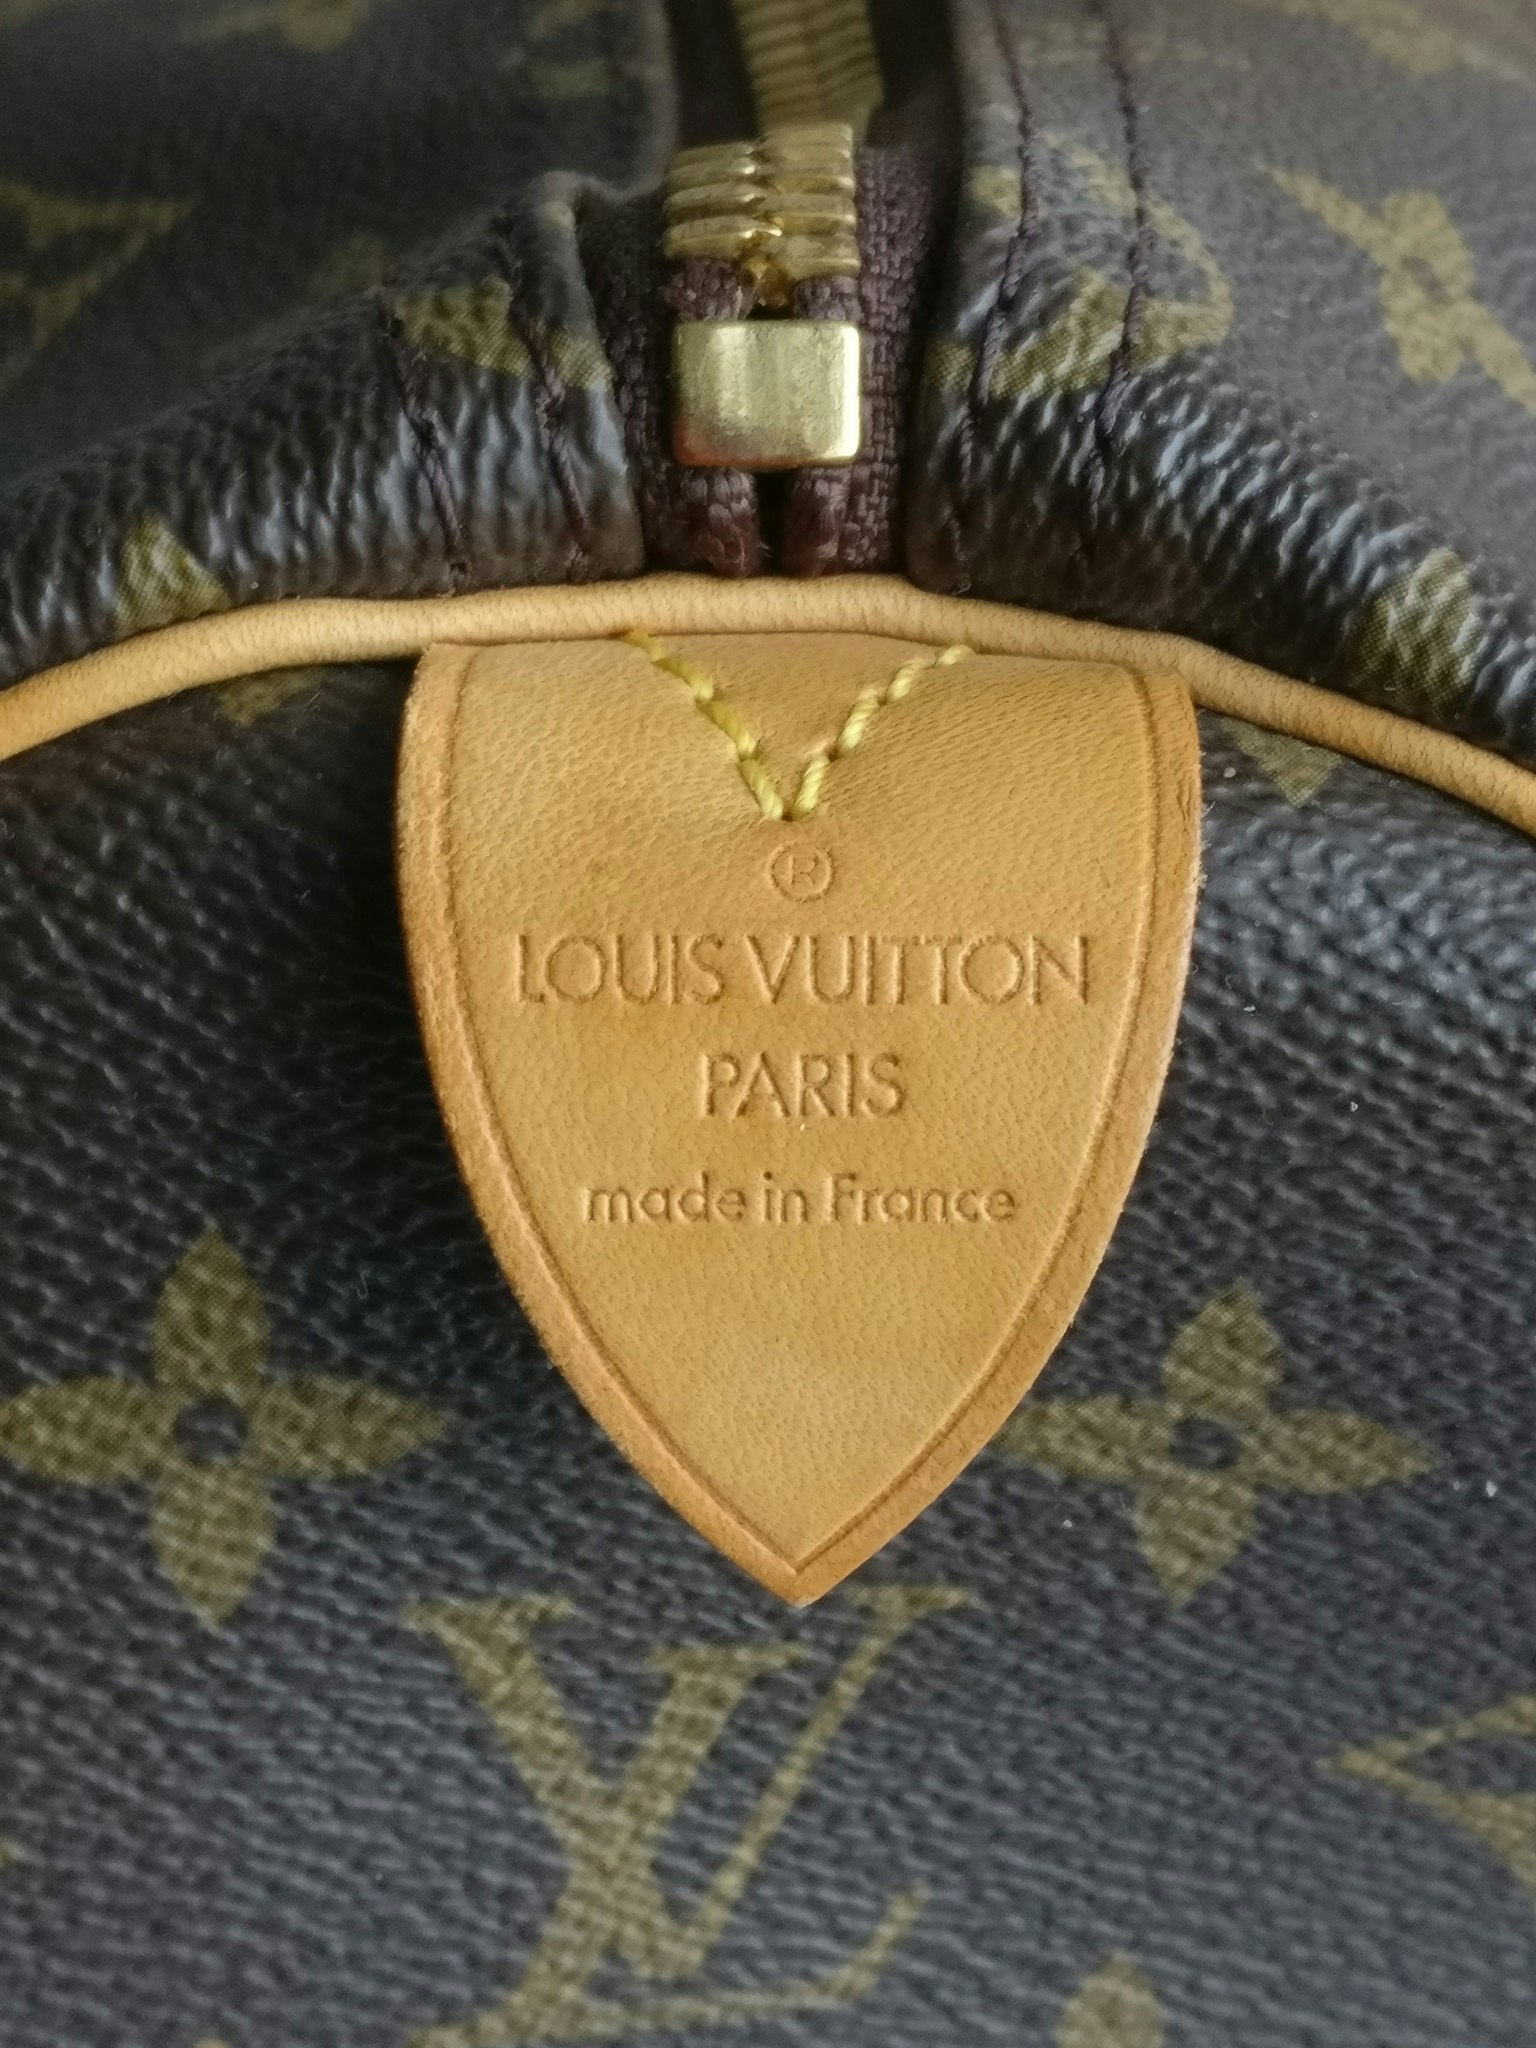 Louis Vuitton Keepall 50